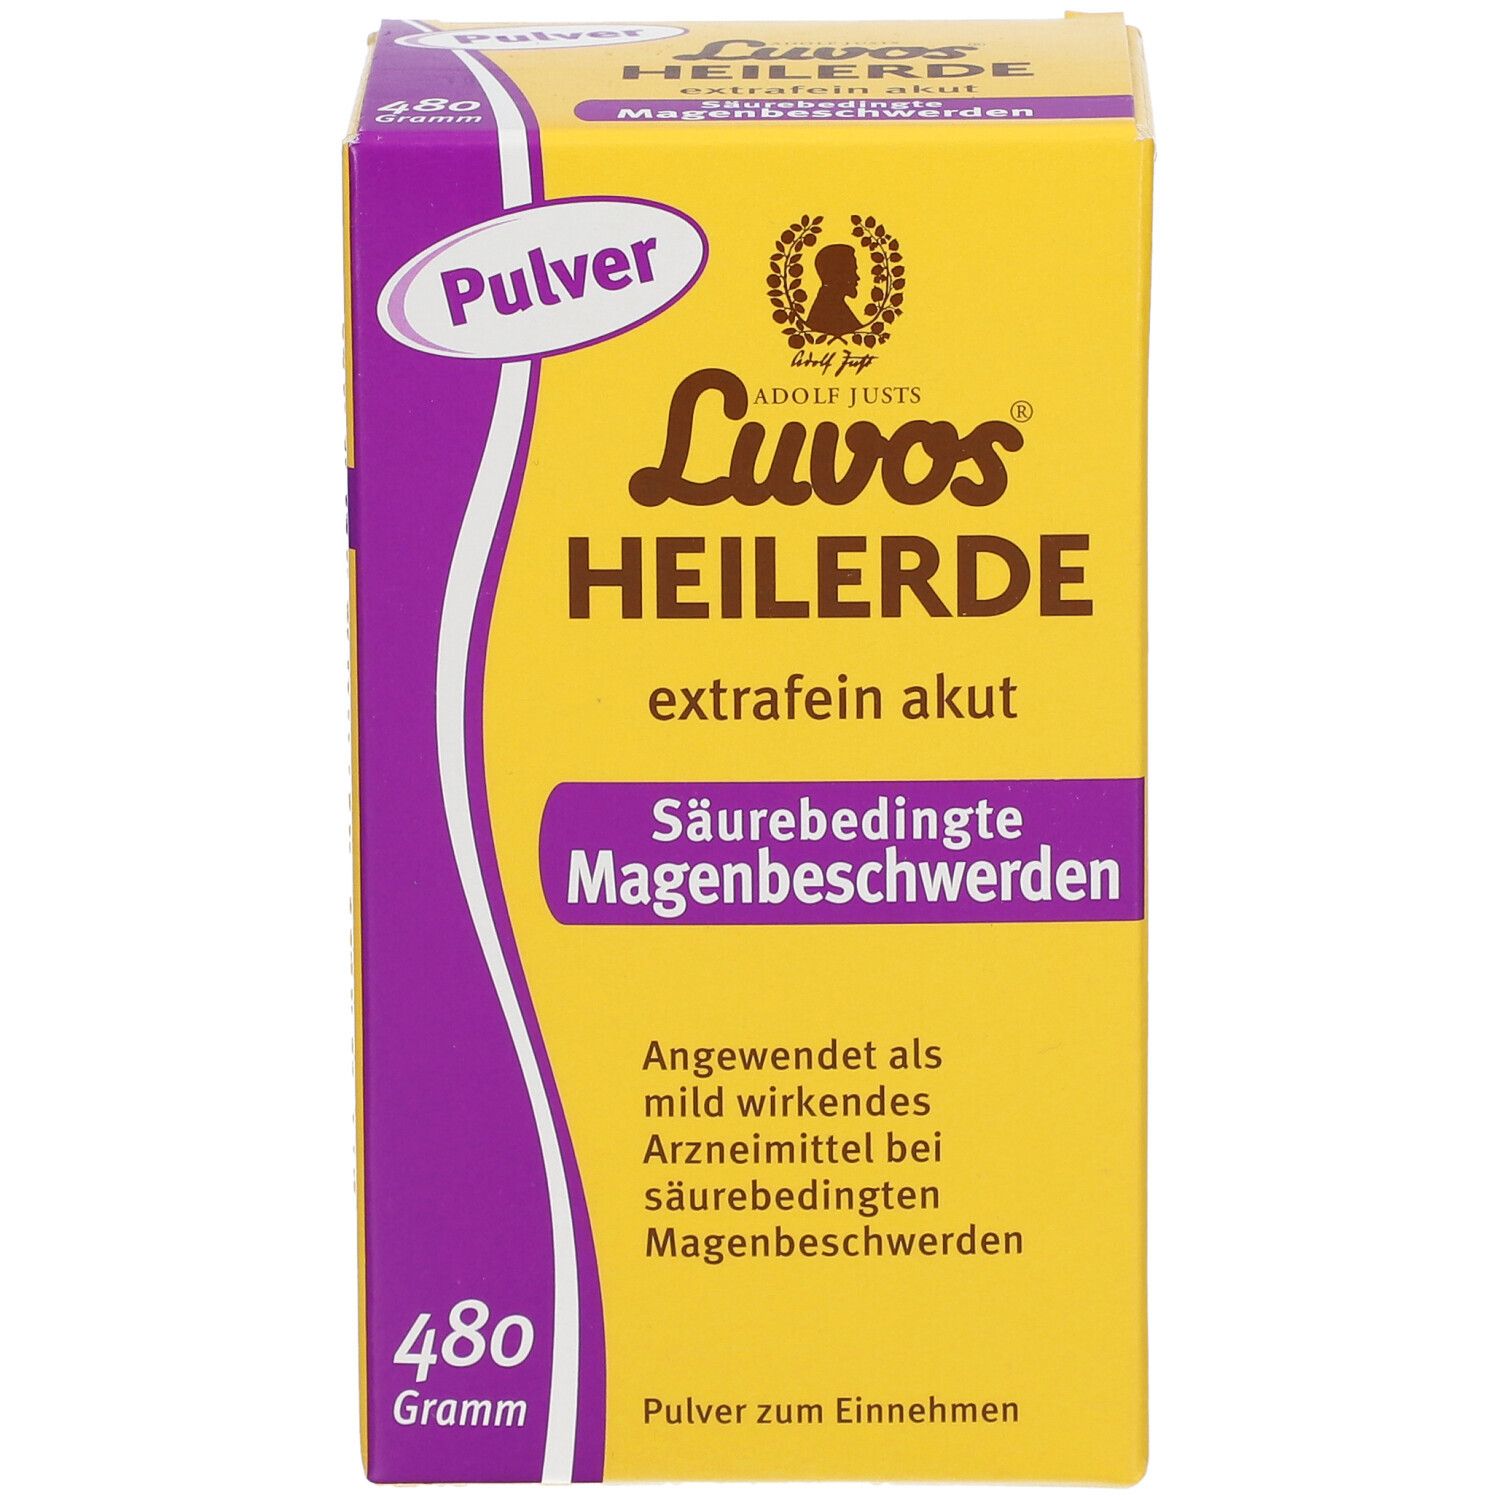 Luvos® Heilerde extrafein akut Säurebedingte Magenbeschwerden